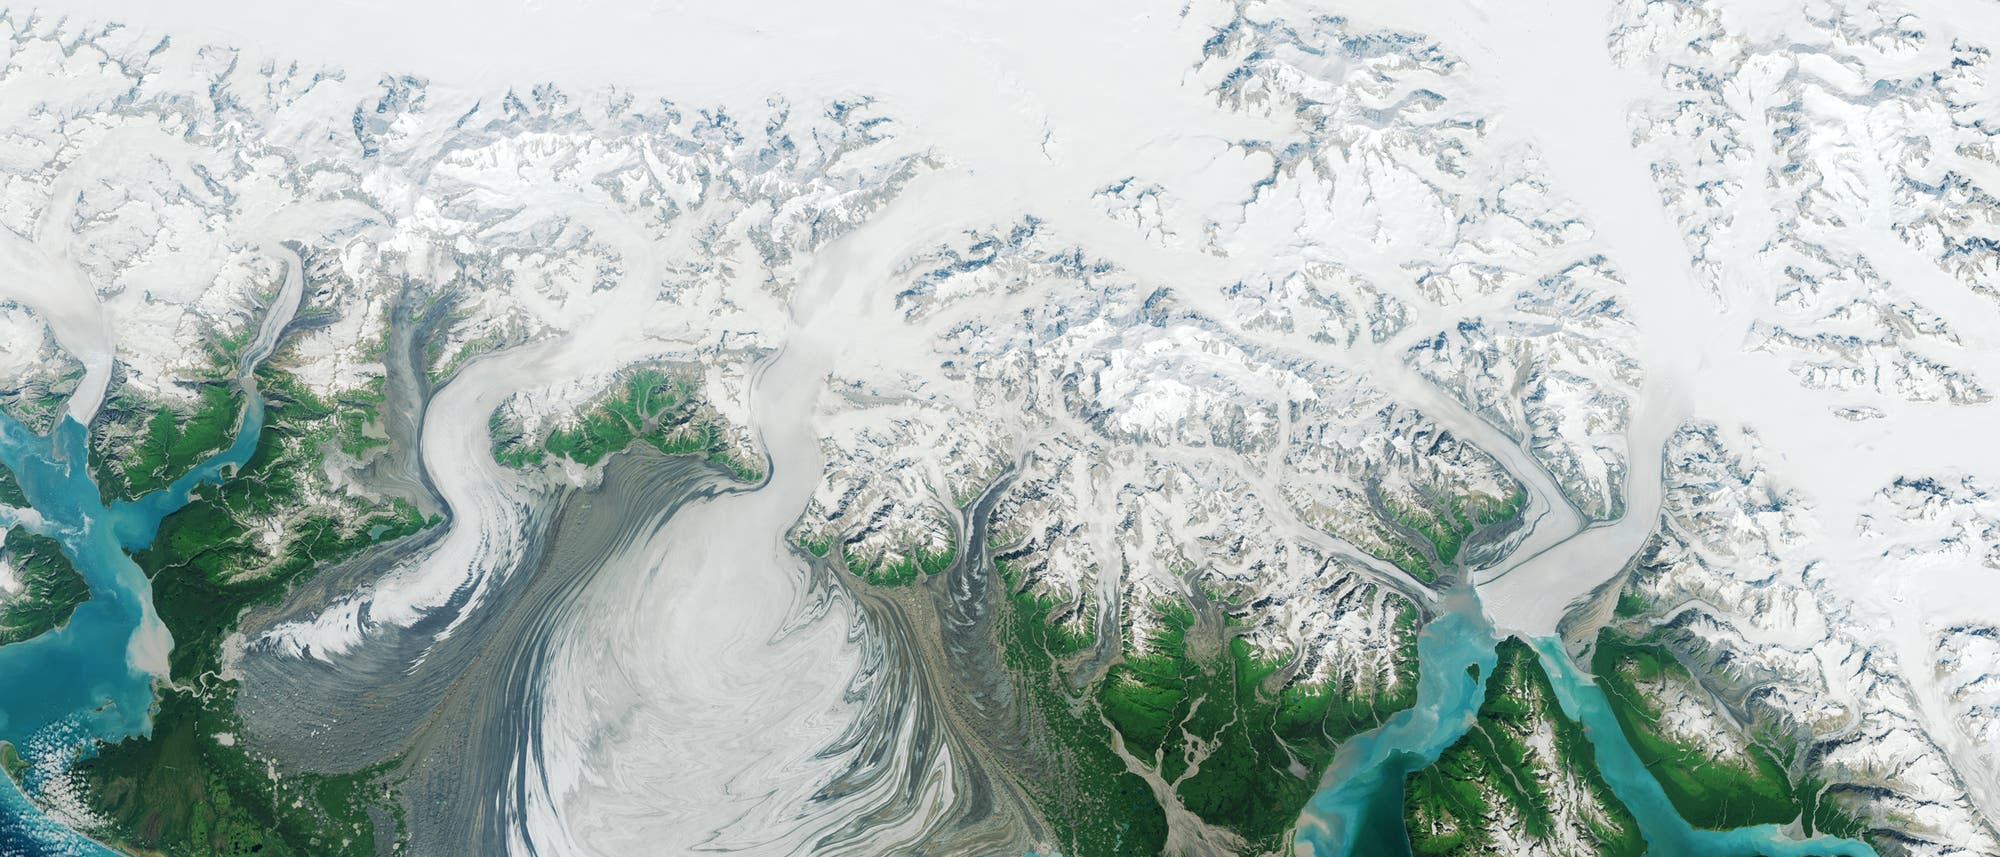 Der Hubbard Glacier (links mündet er im Meer) wächst seit 100 Jahren